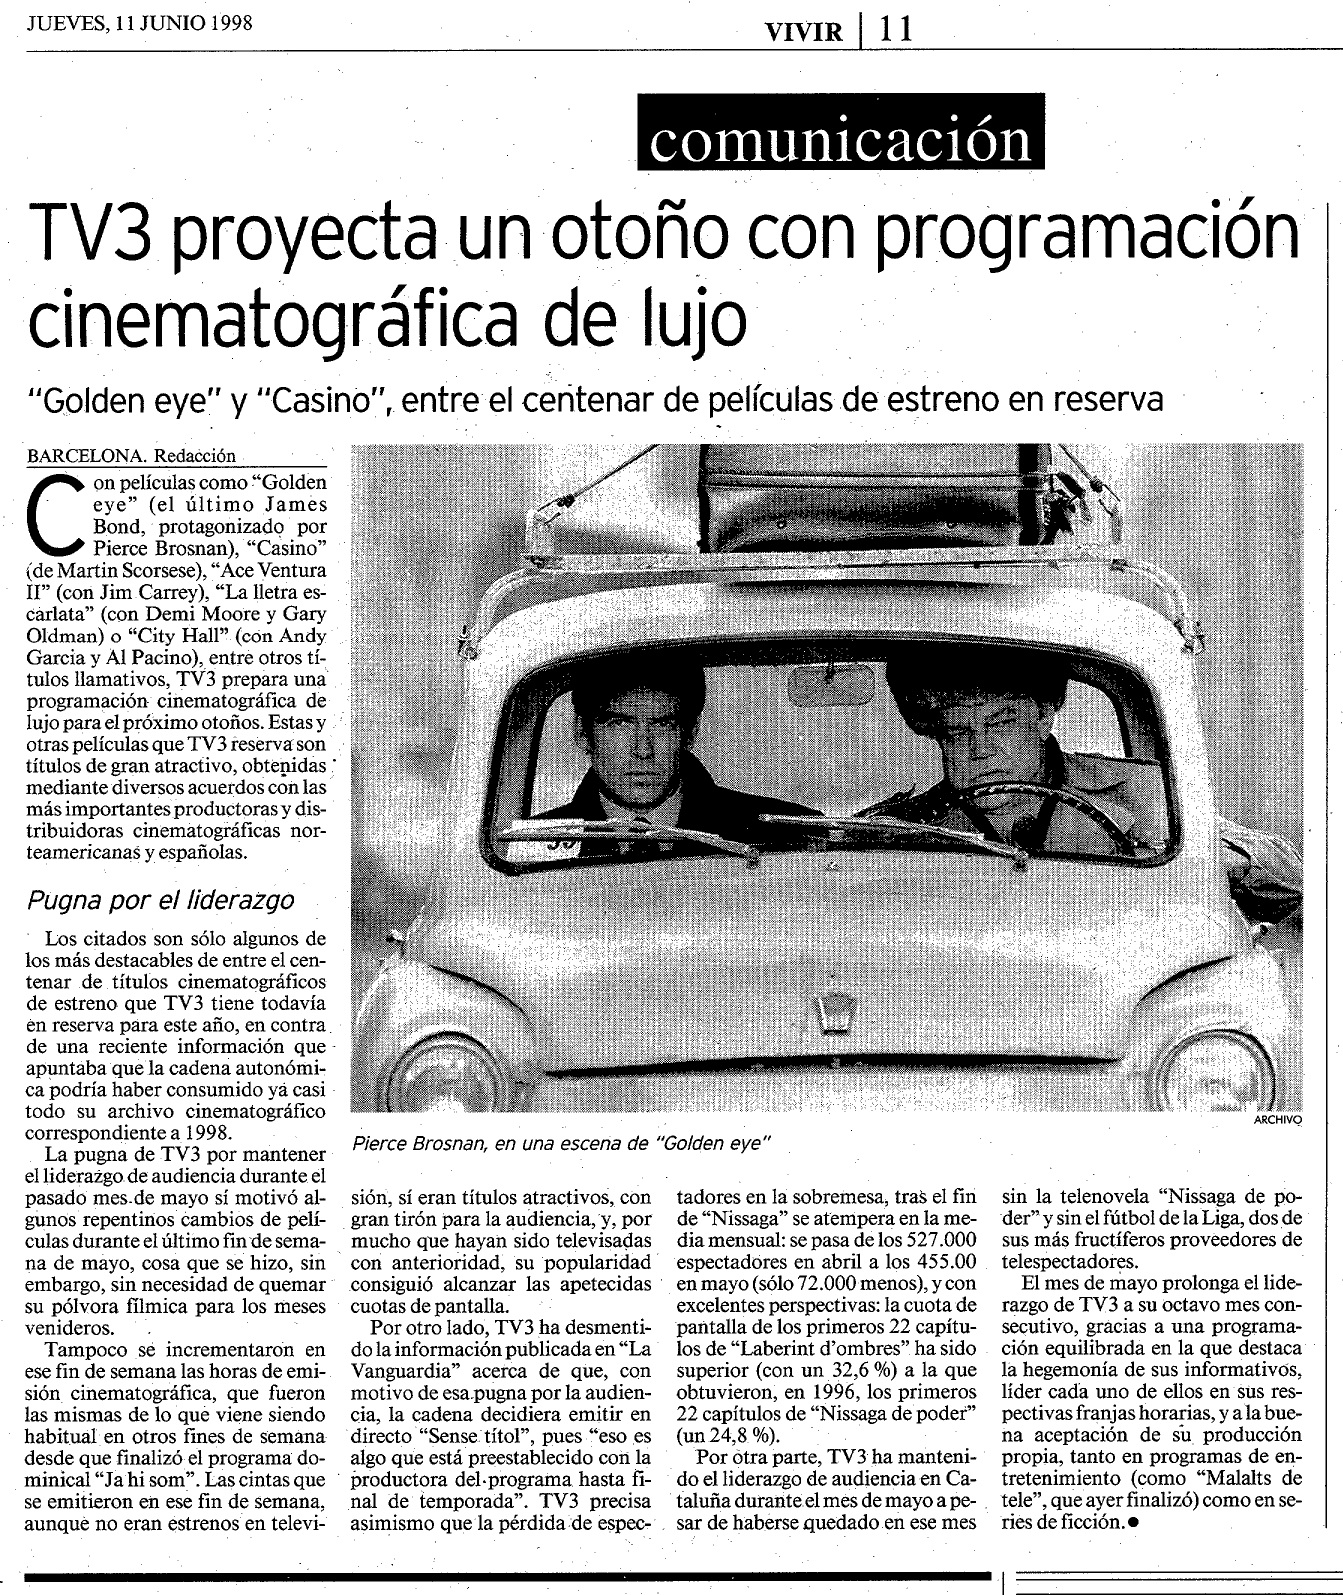 17 1998 06 11 La Vanguardia Vivir Barcelona 011 TV3